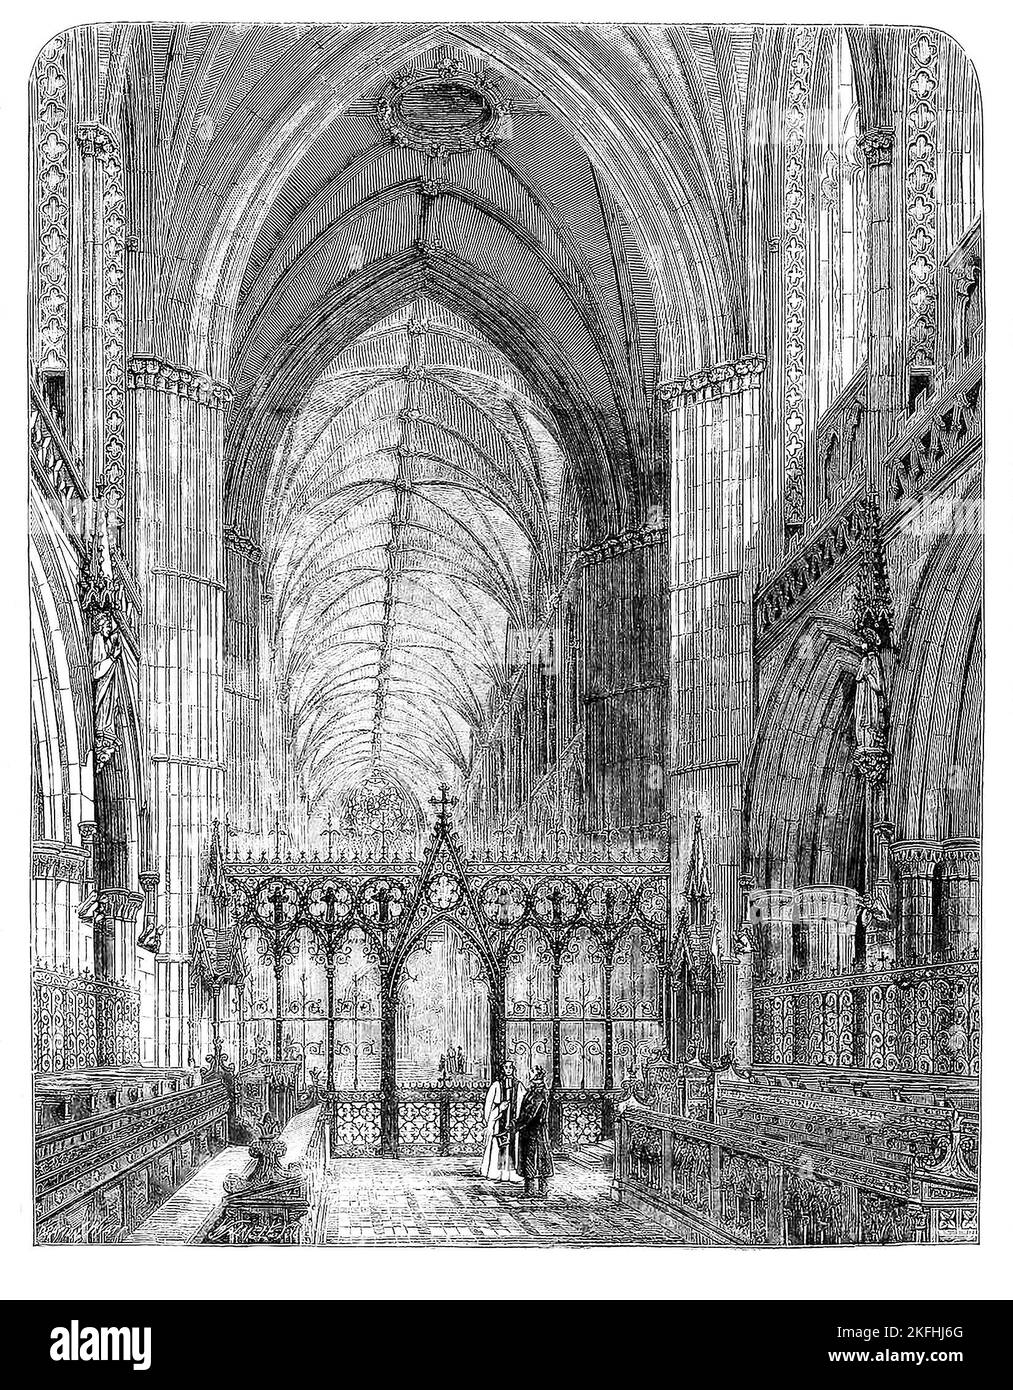 Un croquis de 1860 de la chorale datant de 1200 de la cathédrale de Lichfield, une cathédrale anglicane de Lichfield, Staffordshire, Angleterre, dédiée à Saint-Tchad et à Saint Mary. A commencé en 1085 et a continué au cours du XIIe siècle, après que l'église saxonne d'origine a été remplacée par une cathédrale normande en pierre, et à son tour remplacée par l'actuelle cathédrale gothique commencée en 1195. Banque D'Images